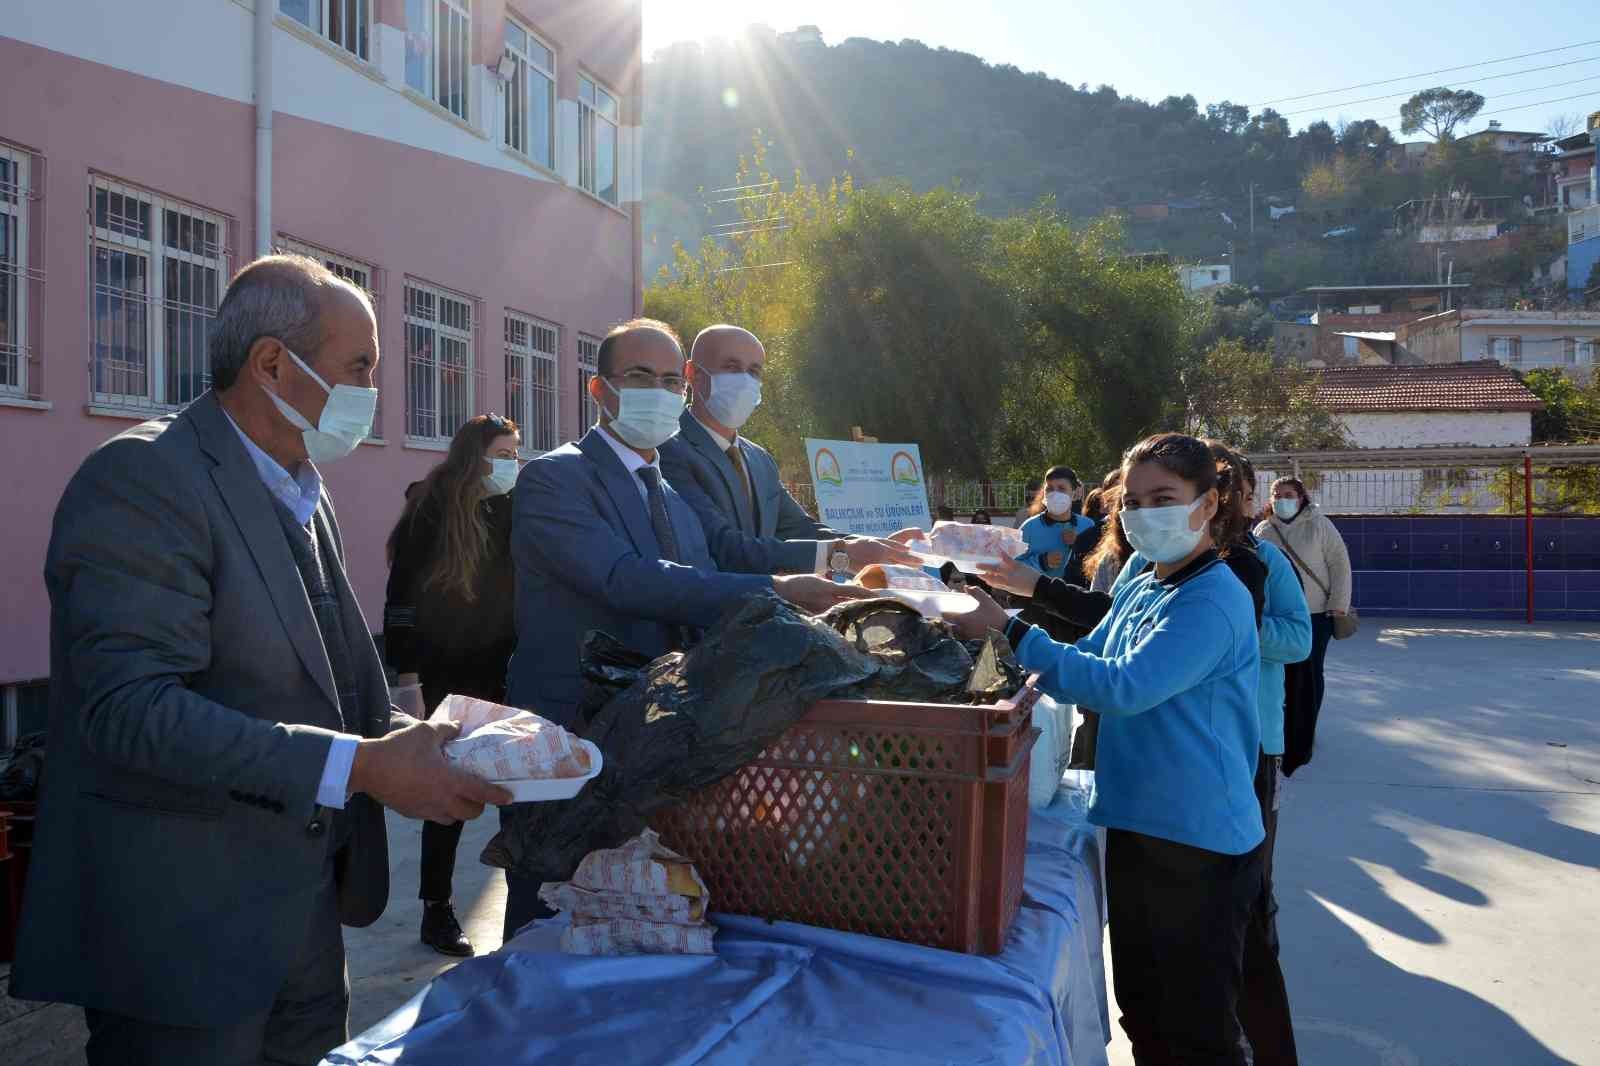 Koçarlı’da öğrencilere 500 adet balık ekmek dağıtıldı #aydin